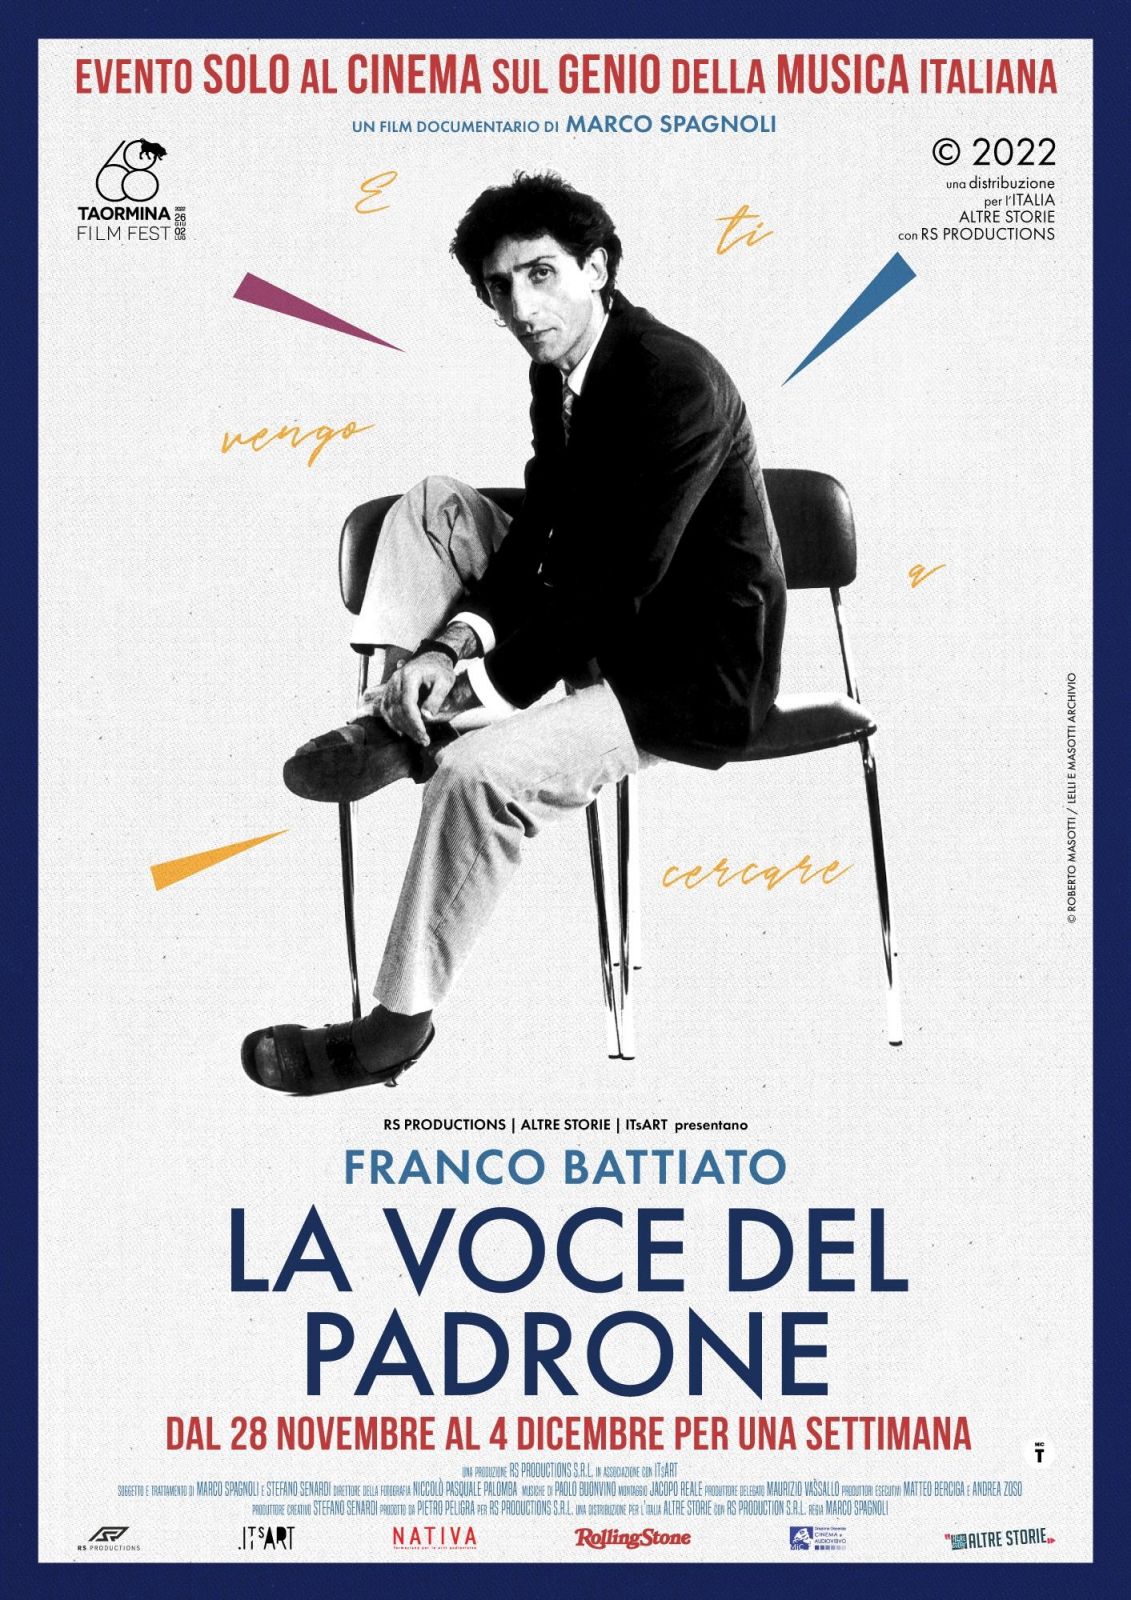 FRANCO BATTIATO - LA VOCE DEL PADRONE. Evento dal 28 Novembre. - Cinema Firenze Il Portico